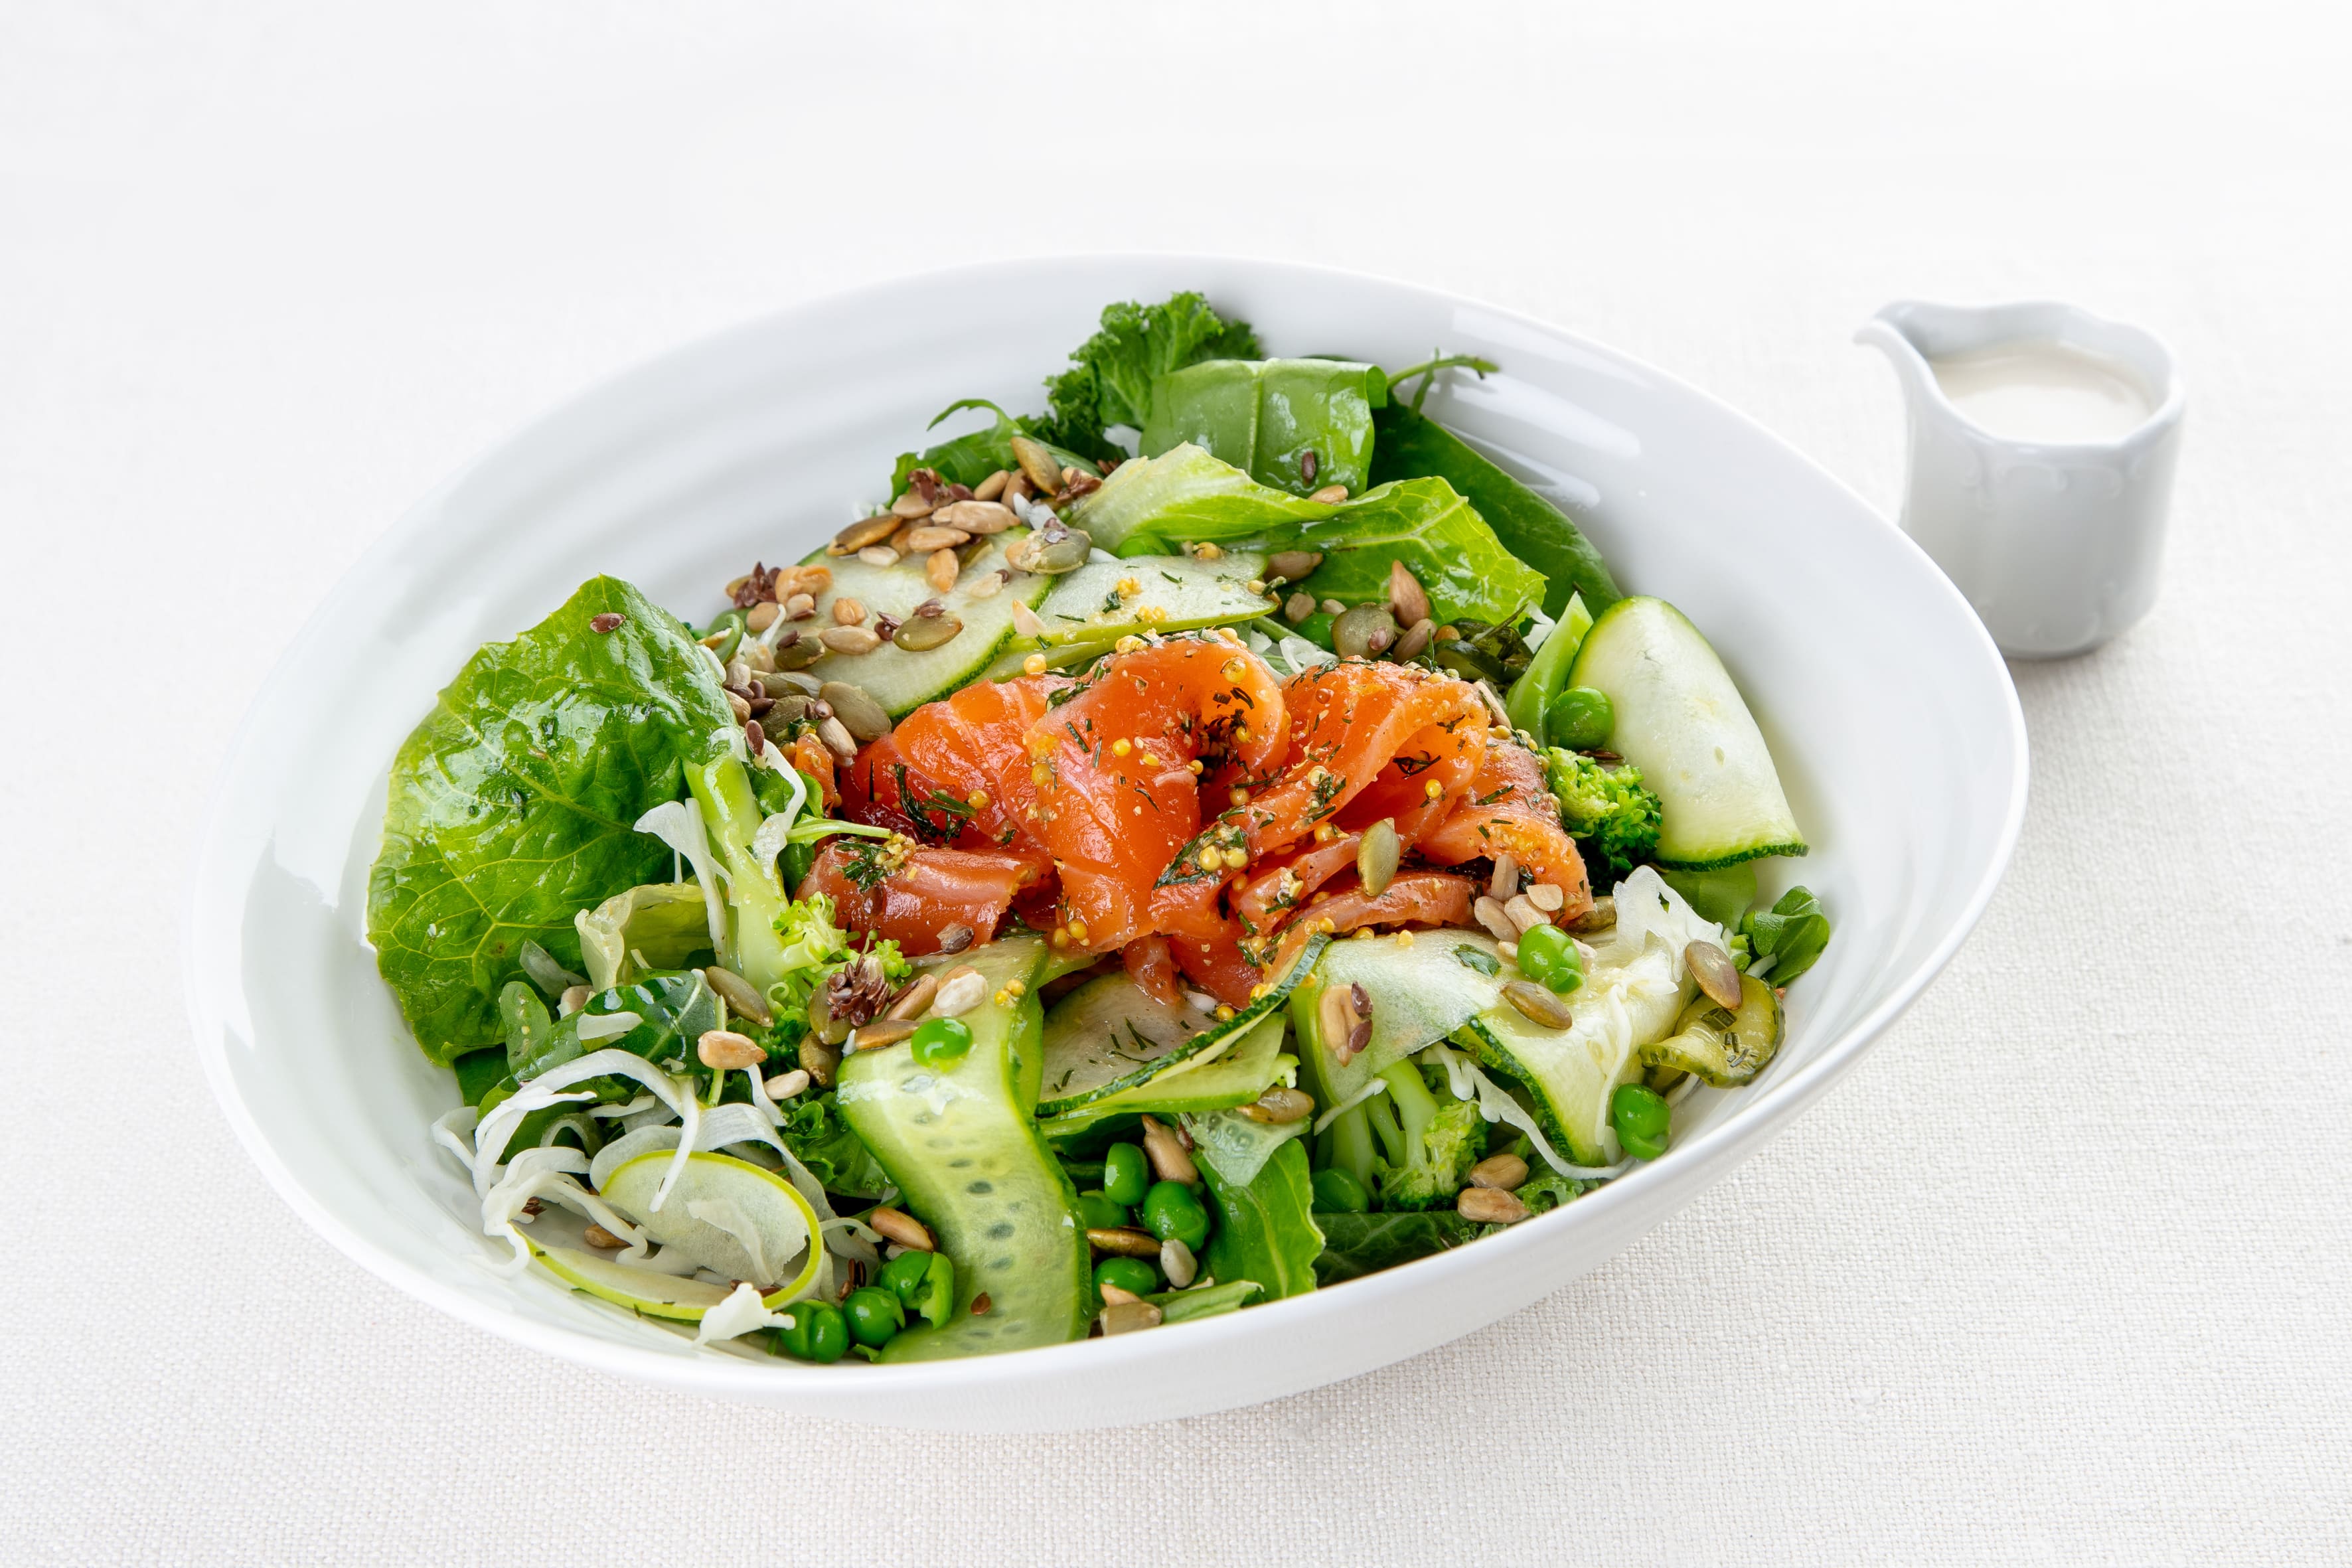 Зеленый салат с лососем гравлакс и заправкой из кешью и пармезана